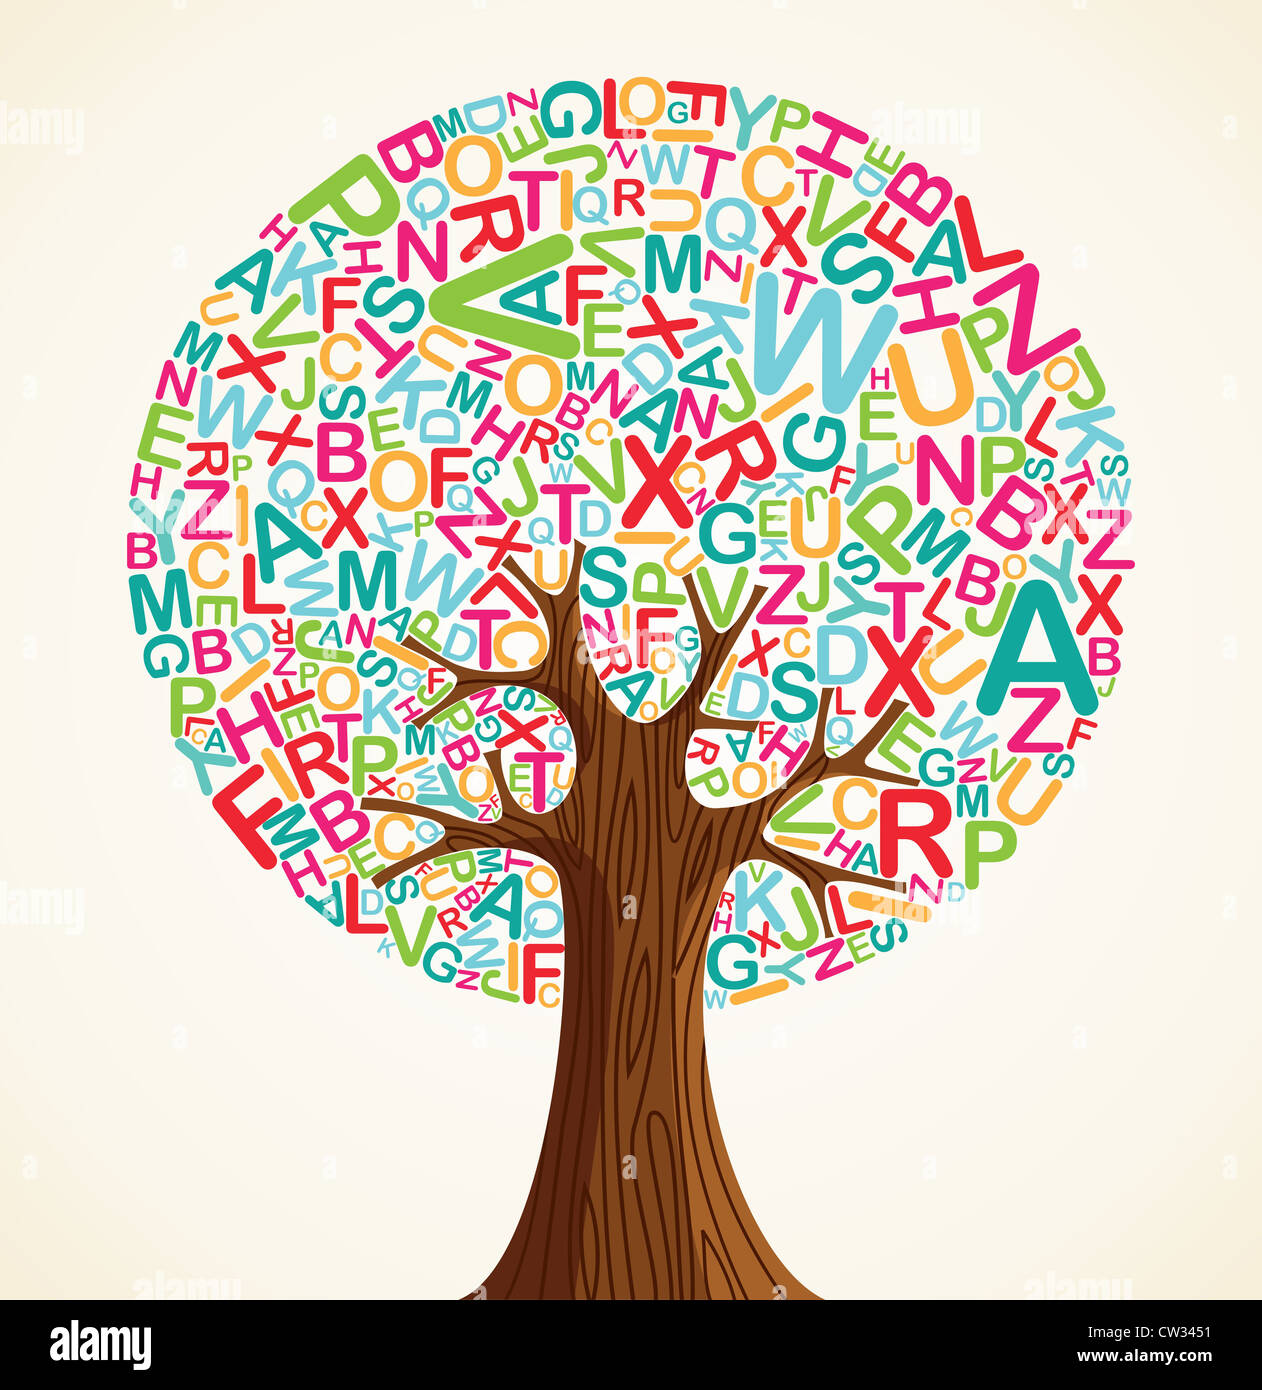 Istruzione scolastica concept tree fatta con lettere. File vettoriale stratificata per una facile manipolazione e colorazione personalizzata. Foto Stock